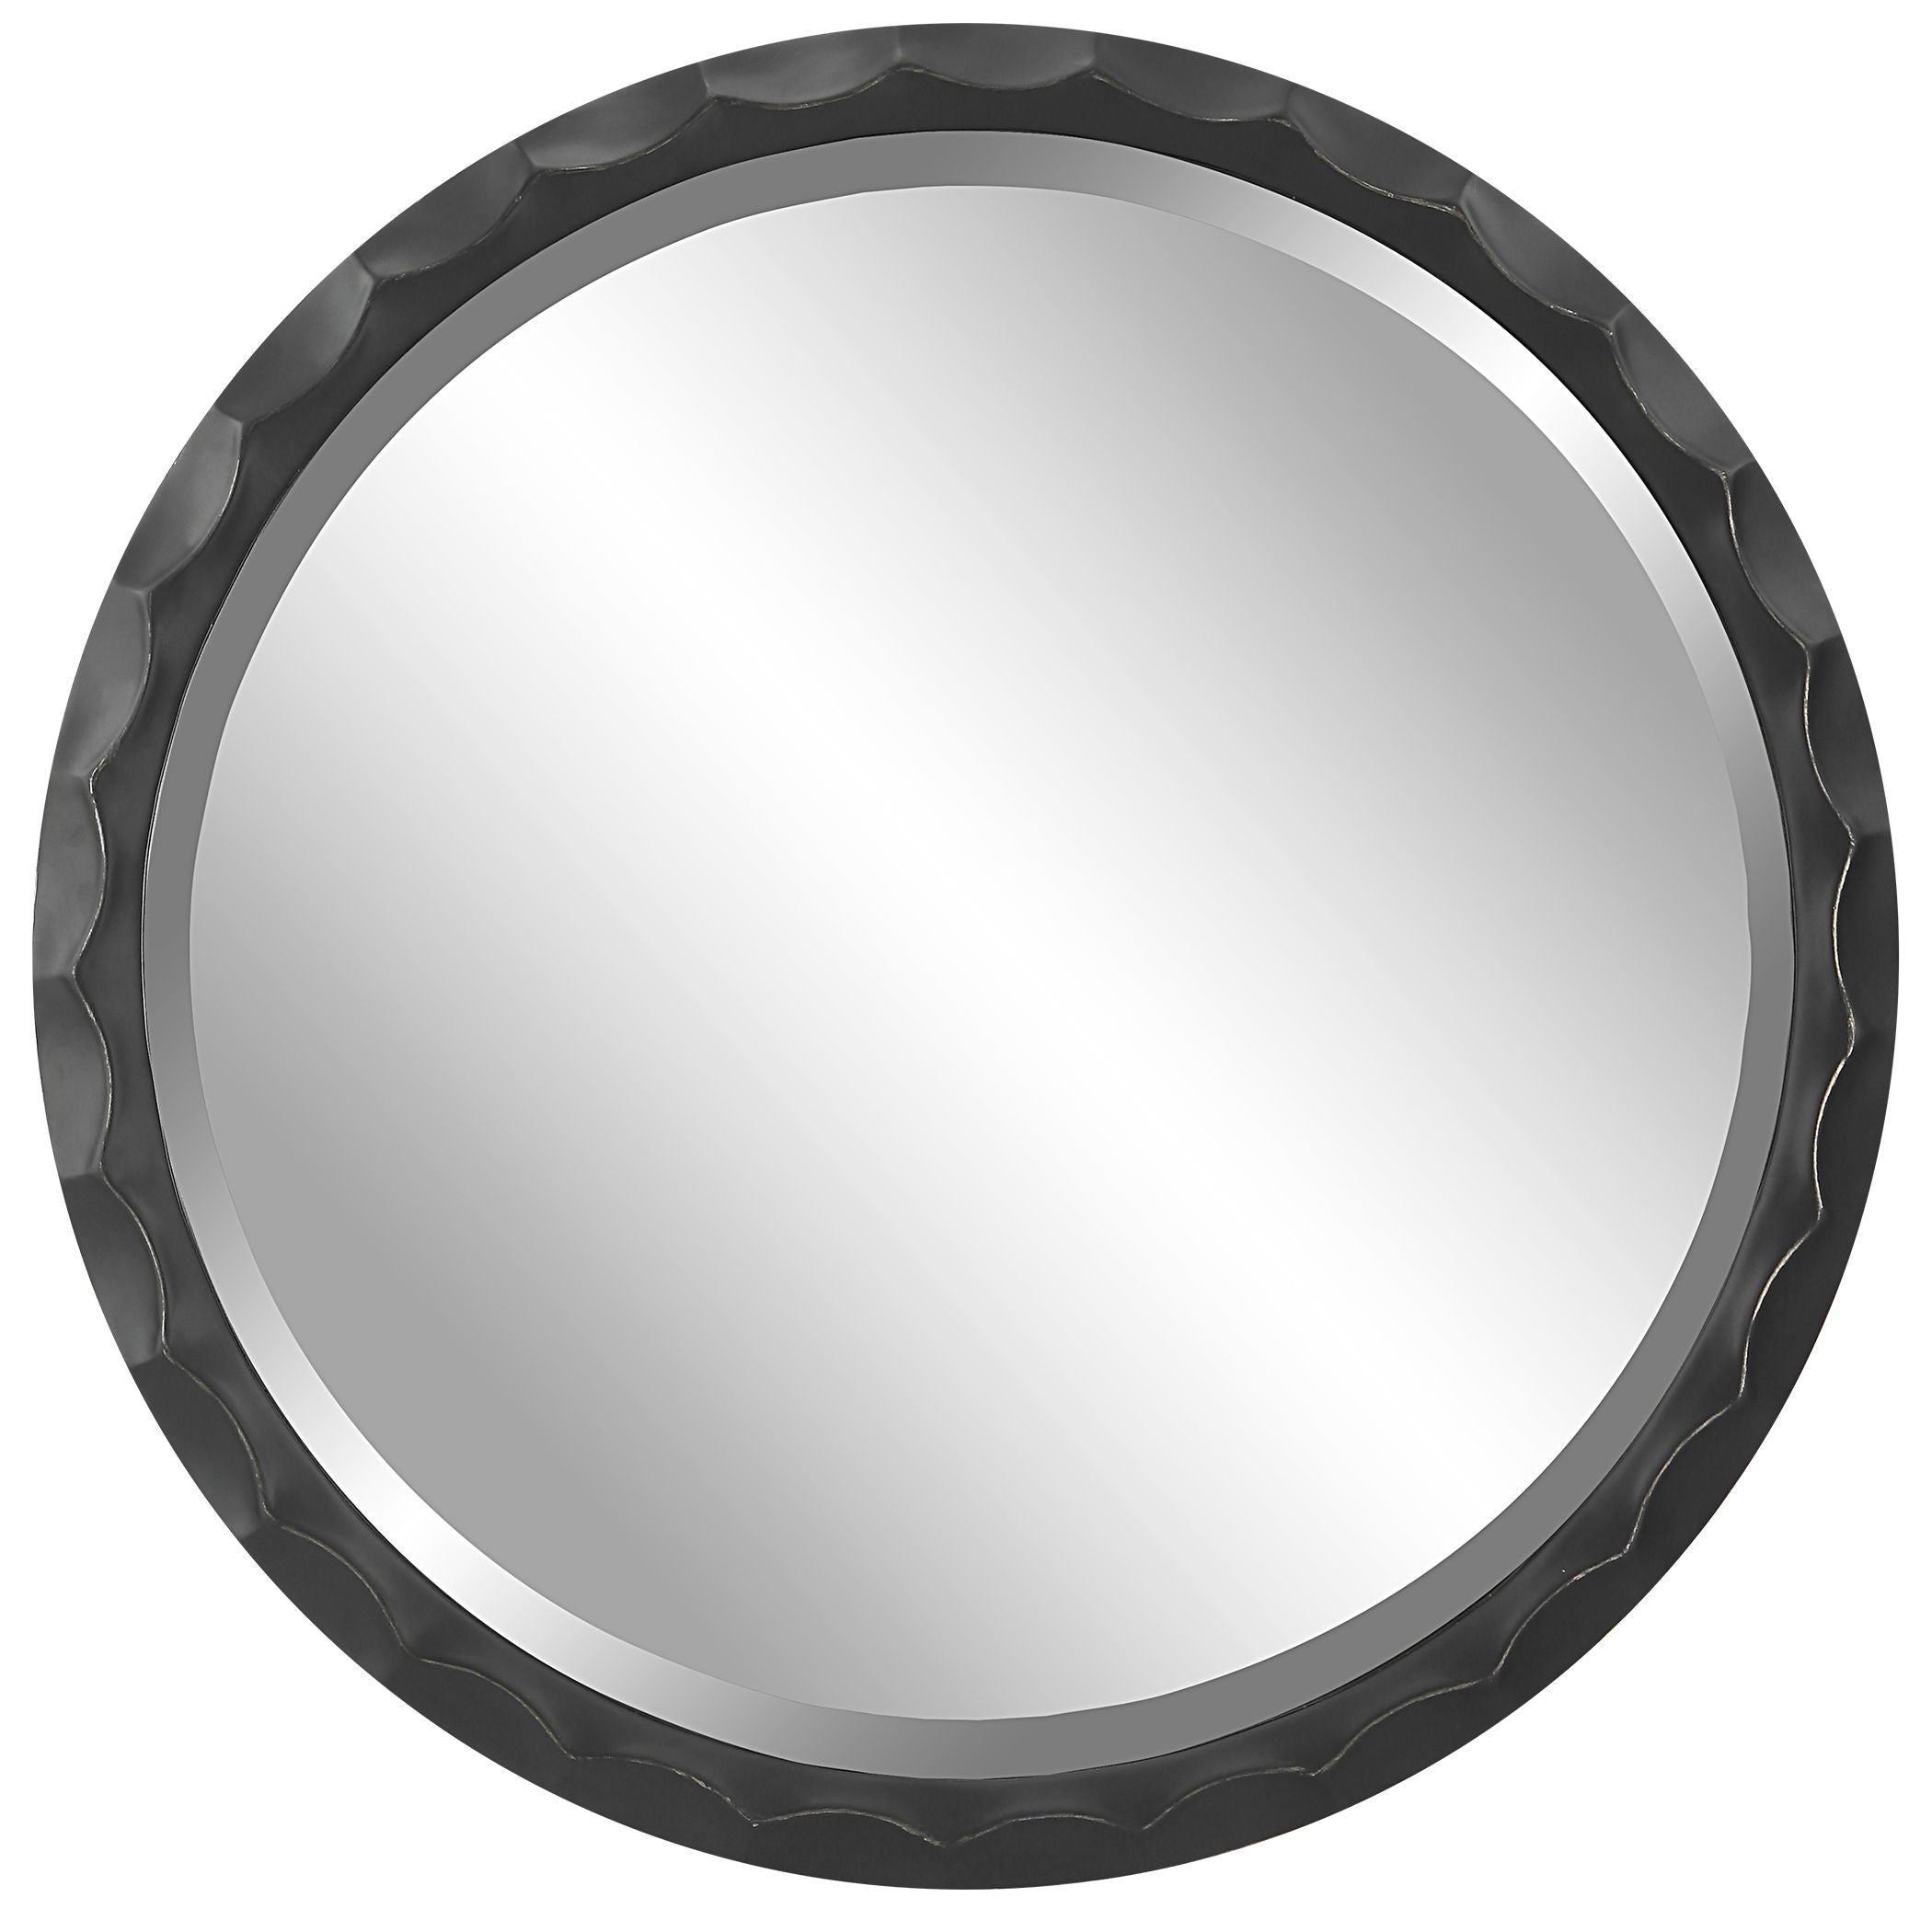 Scalloped - Edge Round Mirror - Black